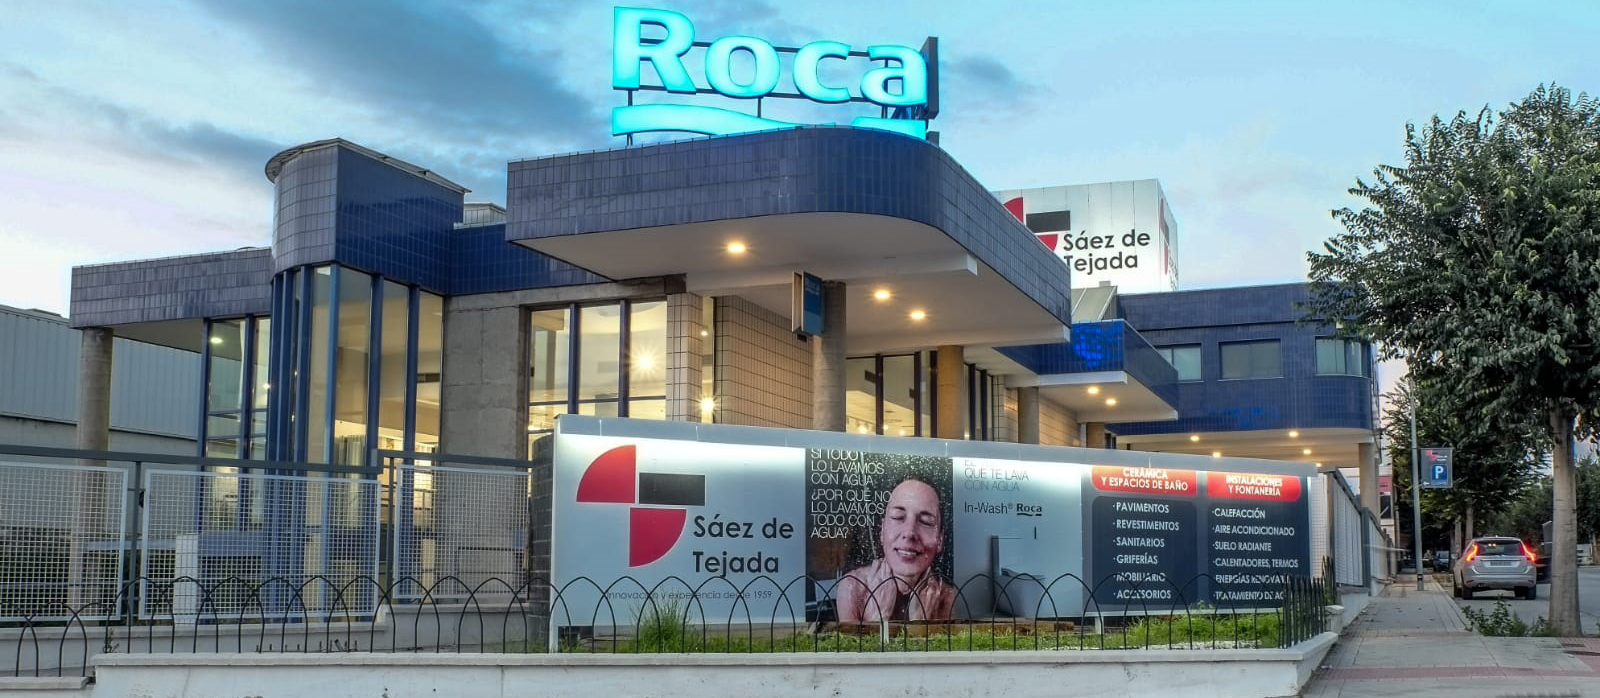 Sobre nosotros - Saez de Tejada - Granada - Distribuidor oficial Roca